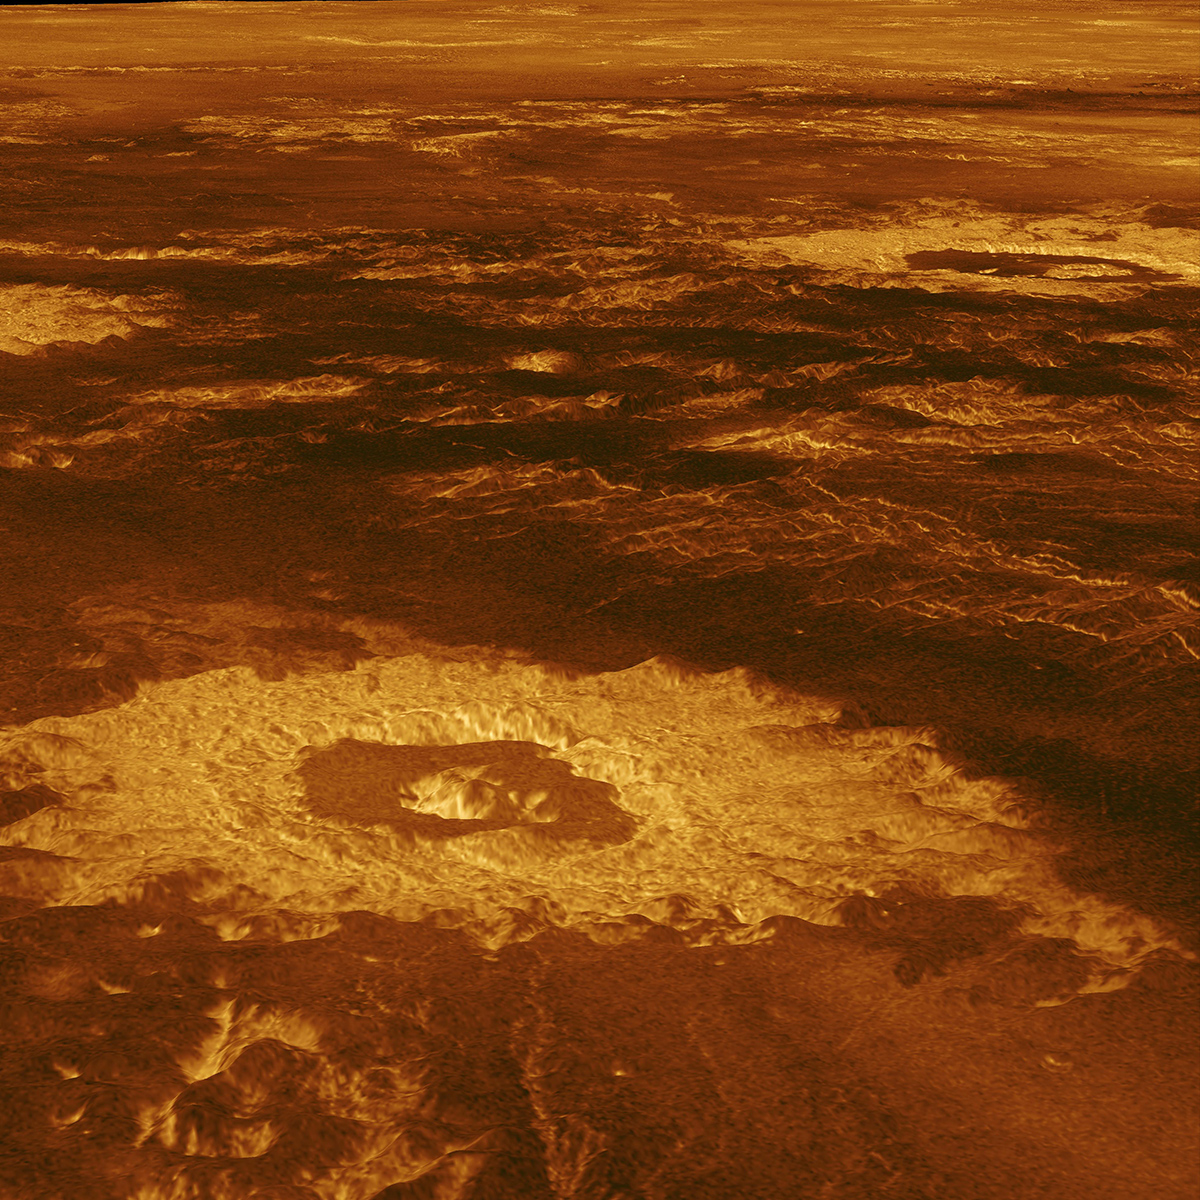 Three impact craters in Venus' Lavinia Planitia